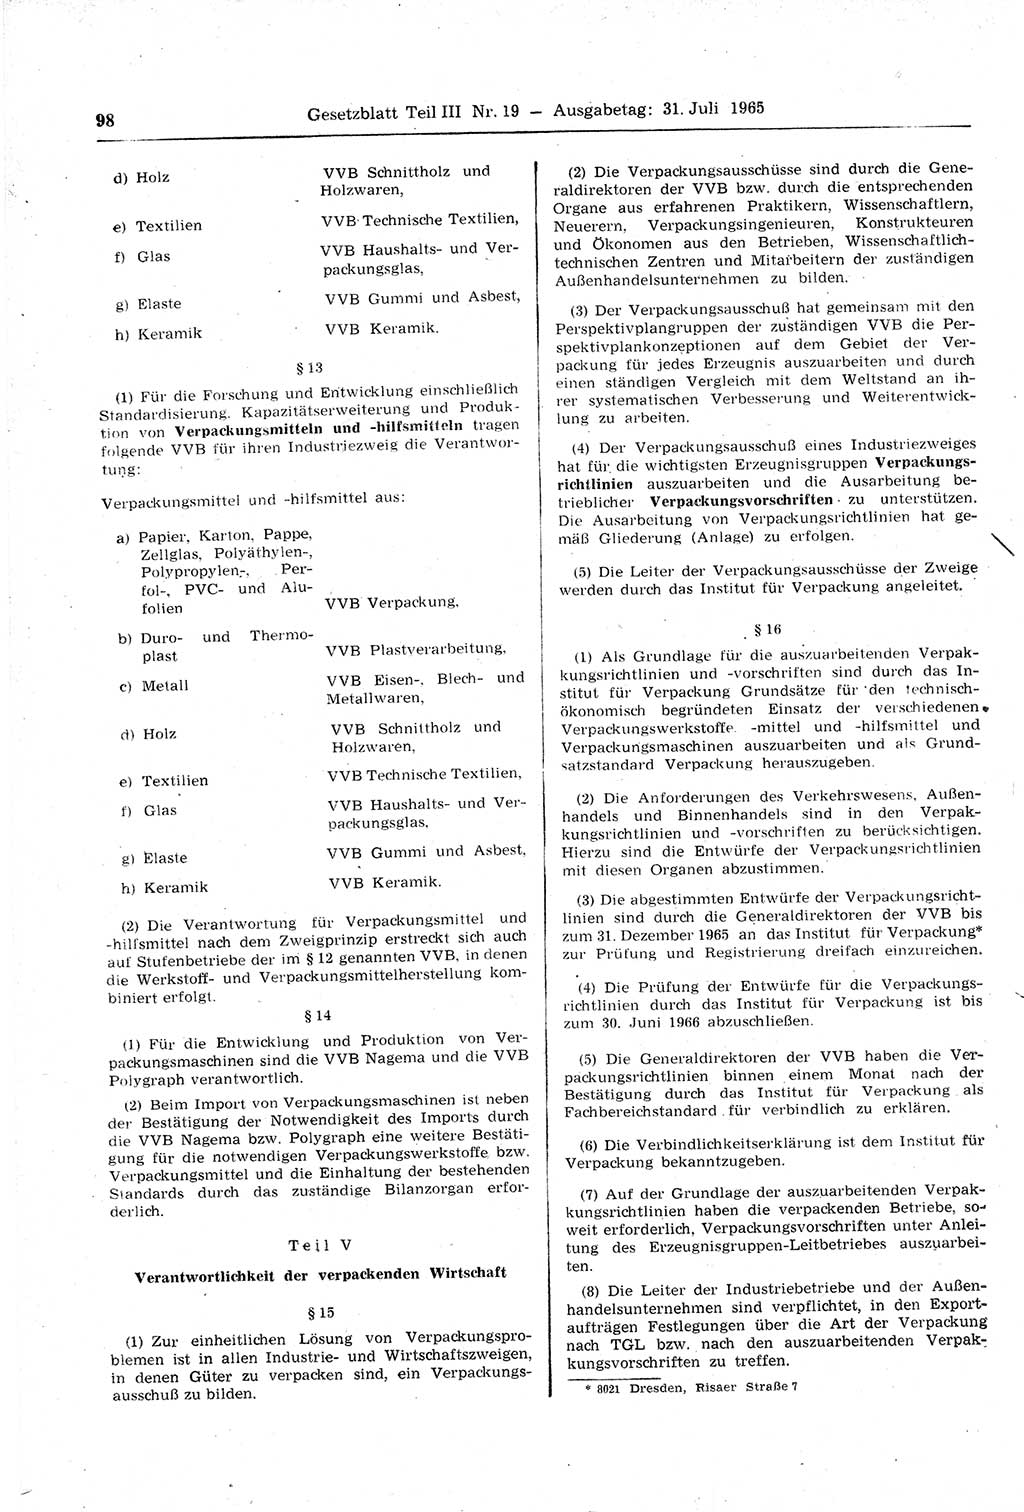 Gesetzblatt (GBl.) der Deutschen Demokratischen Republik (DDR) Teil ⅠⅠⅠ 1965, Seite 98 (GBl. DDR ⅠⅠⅠ 1965, S. 98)